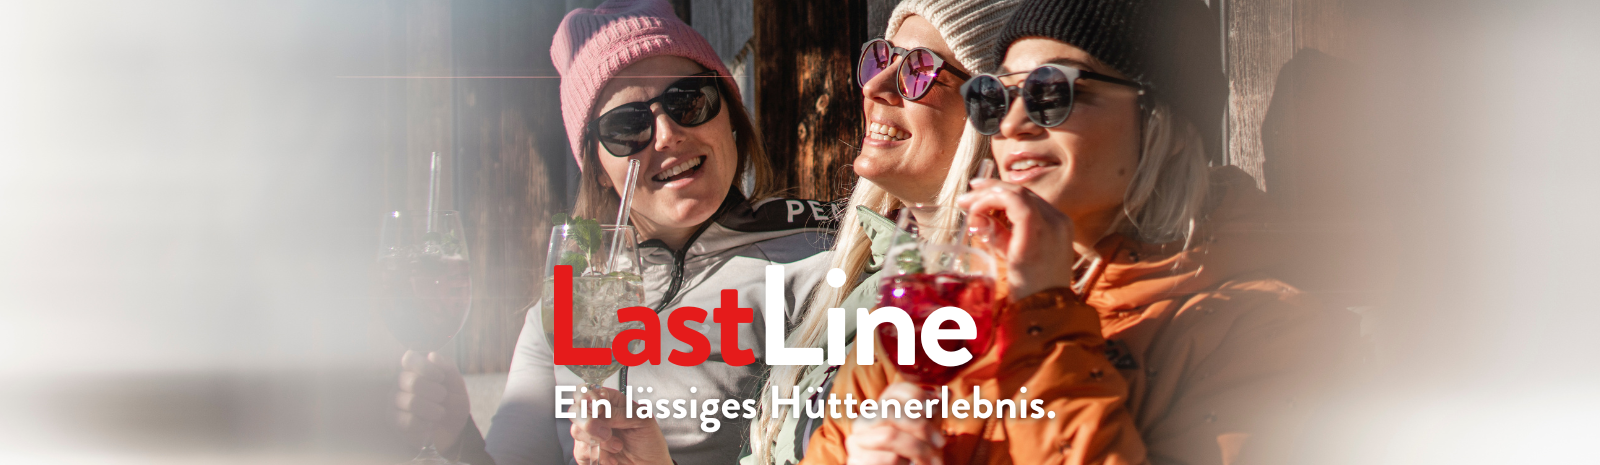 Last Line | © fieberbrunn.com